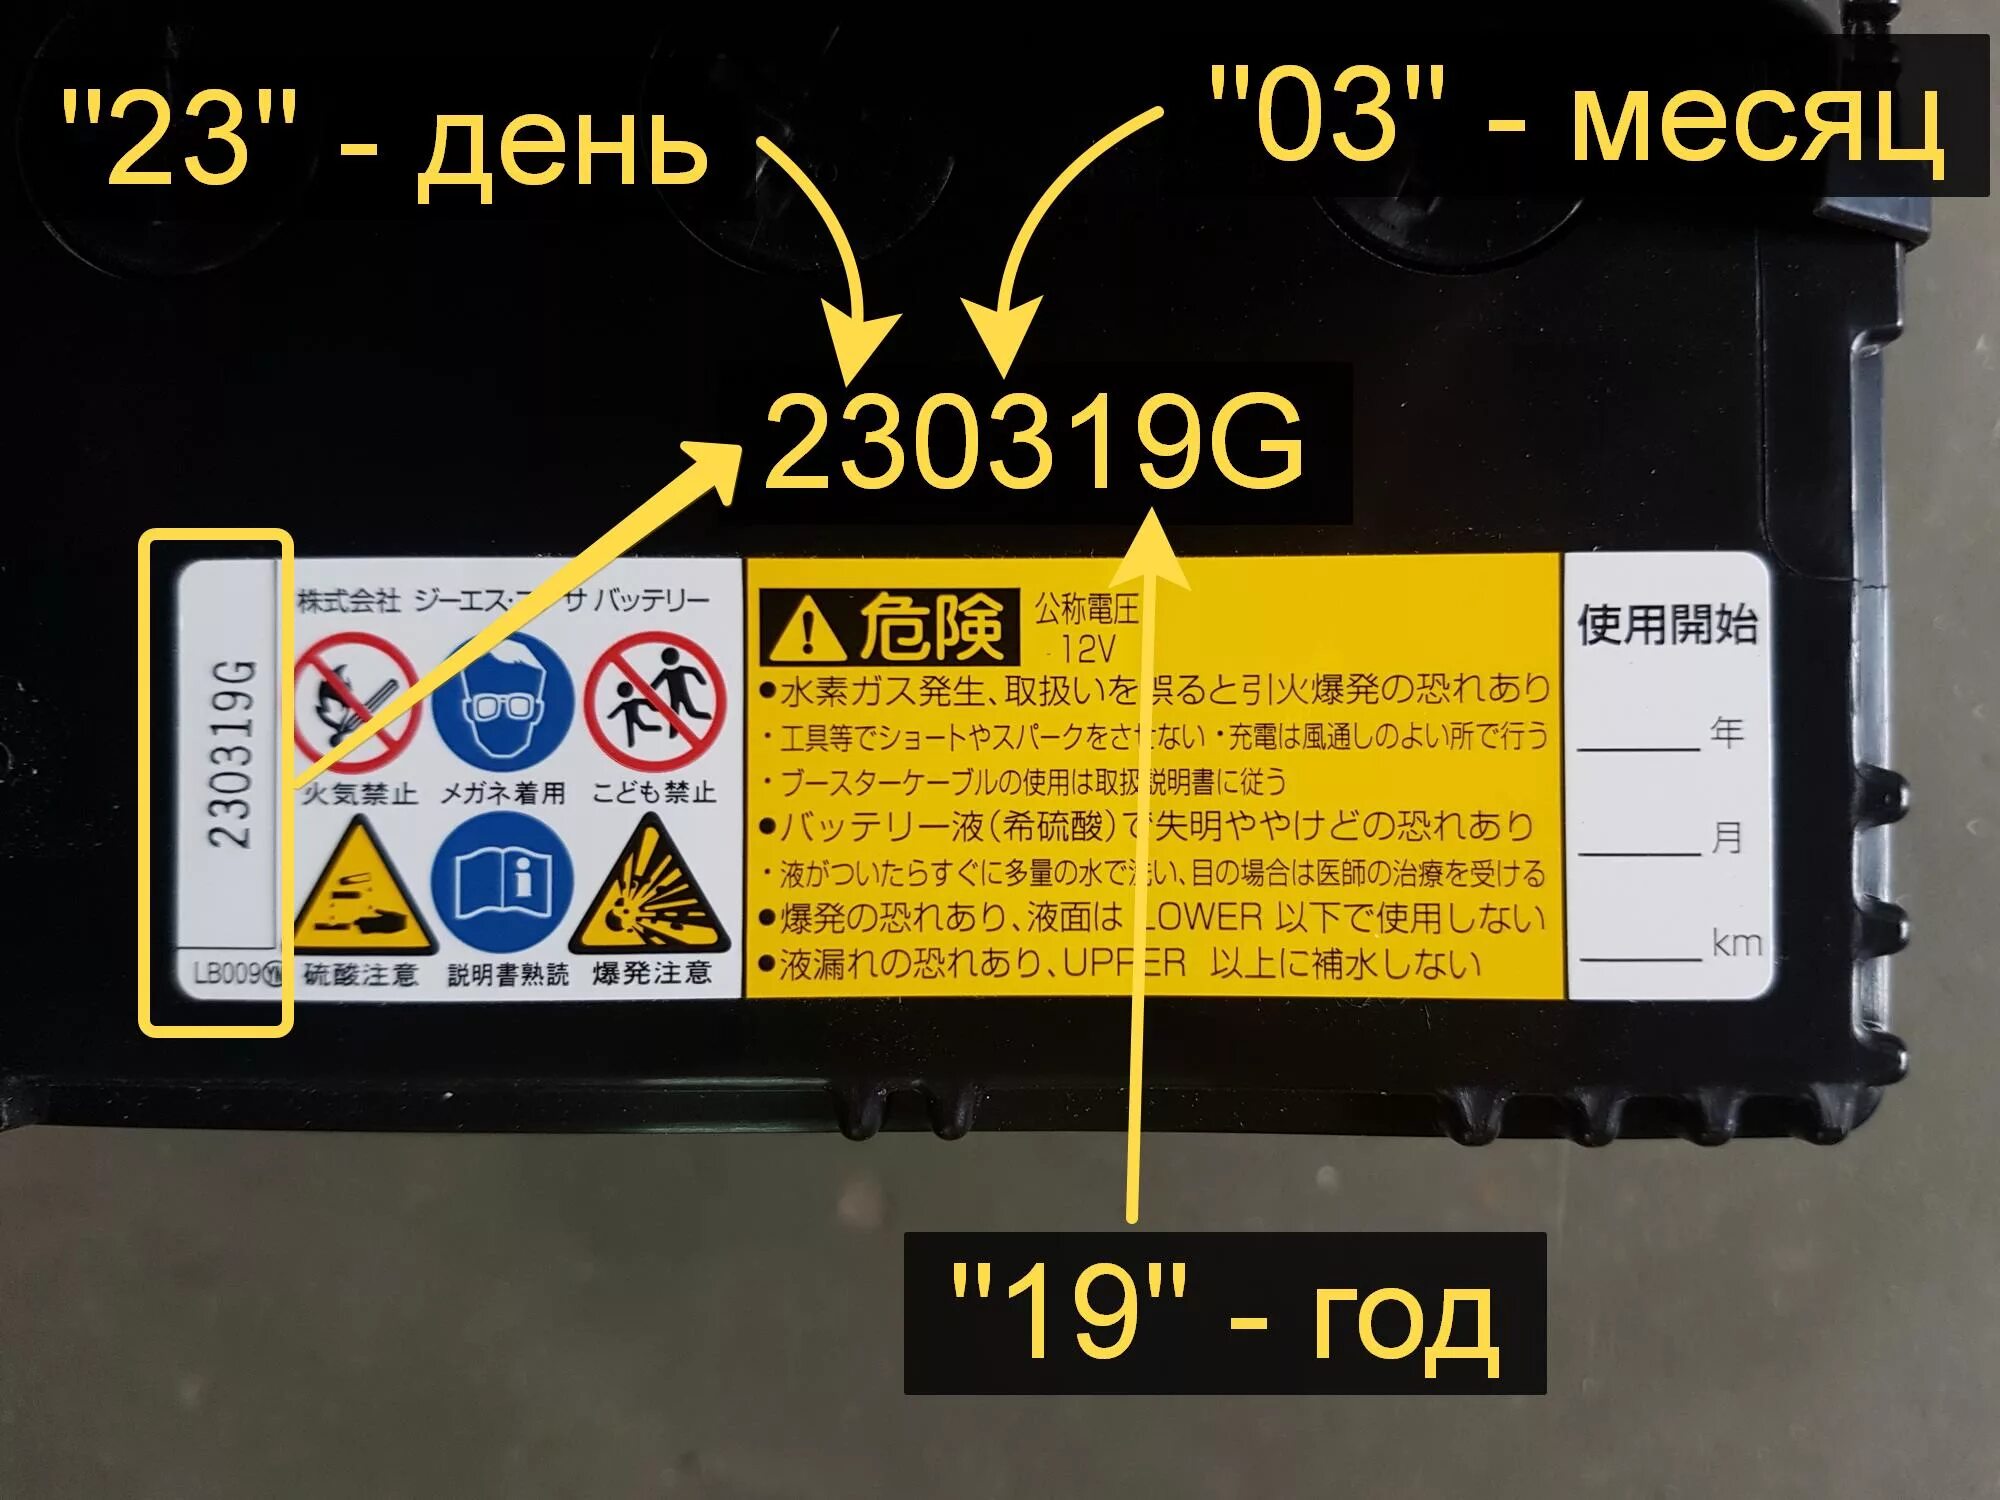 Аккумулятор автомобильный дата выпуска. Как определить год выпуска АКБ Yuasa. Дата производства на японских АКБ. Дата производства автомобильного аккумулятора. Расшифровка маркировки аккумуляторных батарей бош.